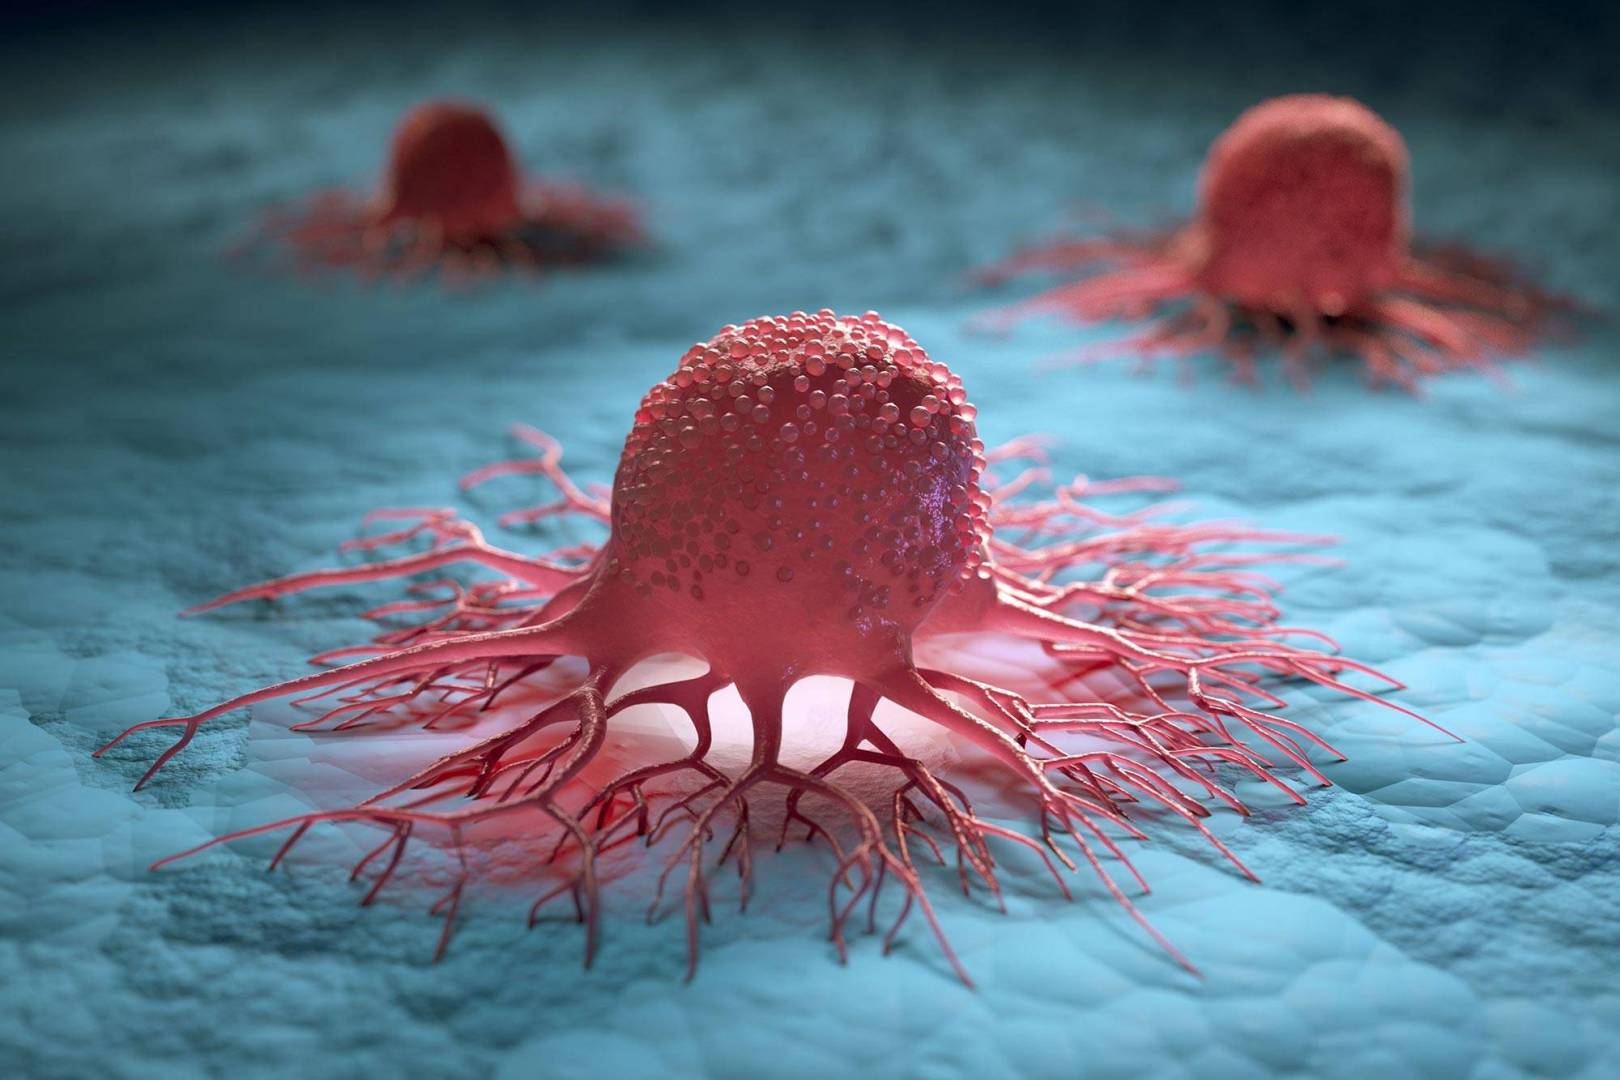 ابتكار جهاز جديد يمكنه اكتشاف وتحليل الخلايا السرطانية من عينات الدم